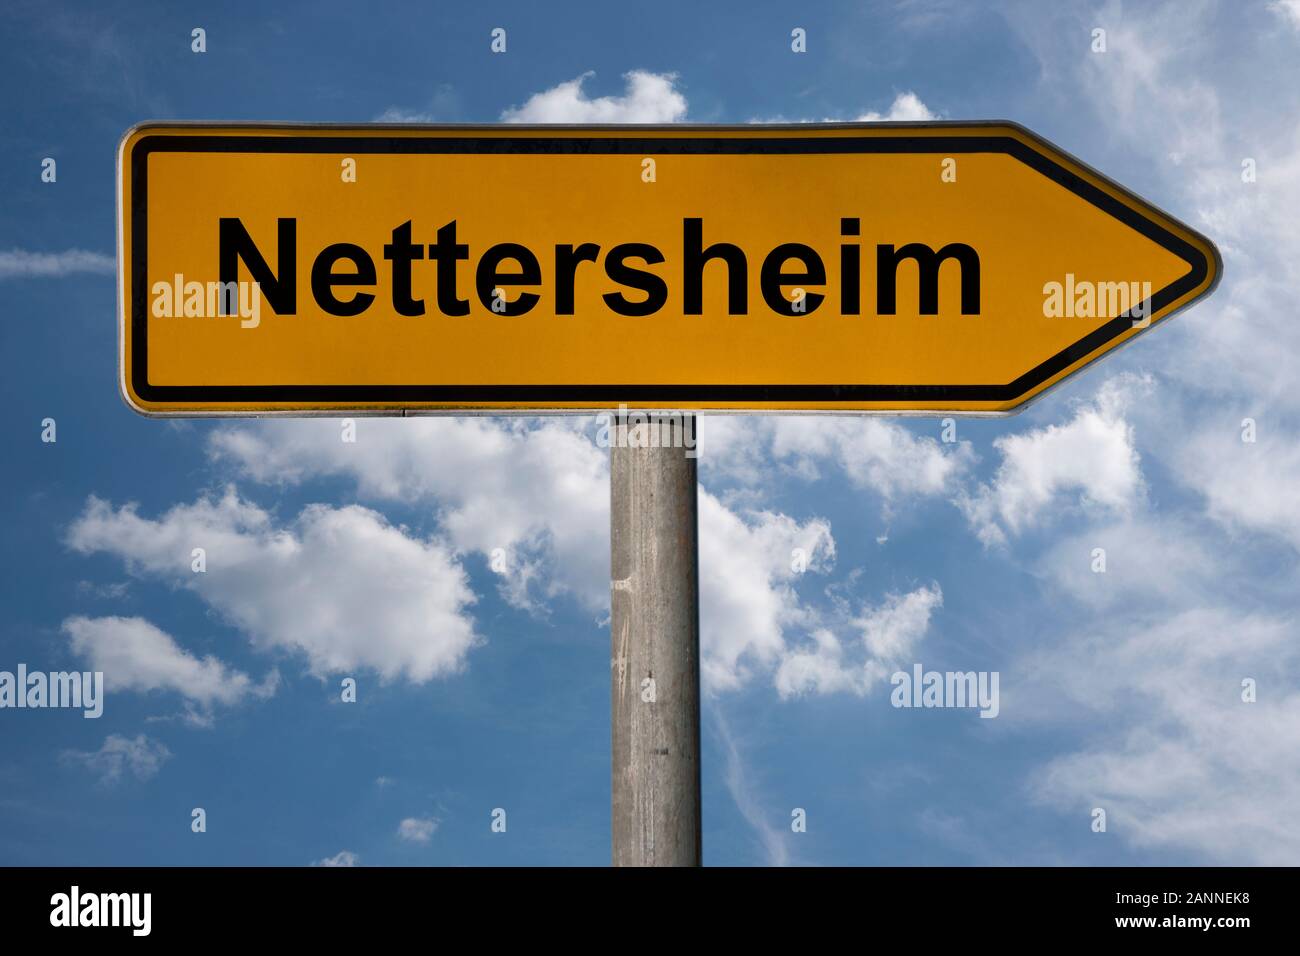 Photo détail d'un panneau avec l'inscription Nettersheim, Nordrhein-Westfalen, Germany, Europe Banque D'Images